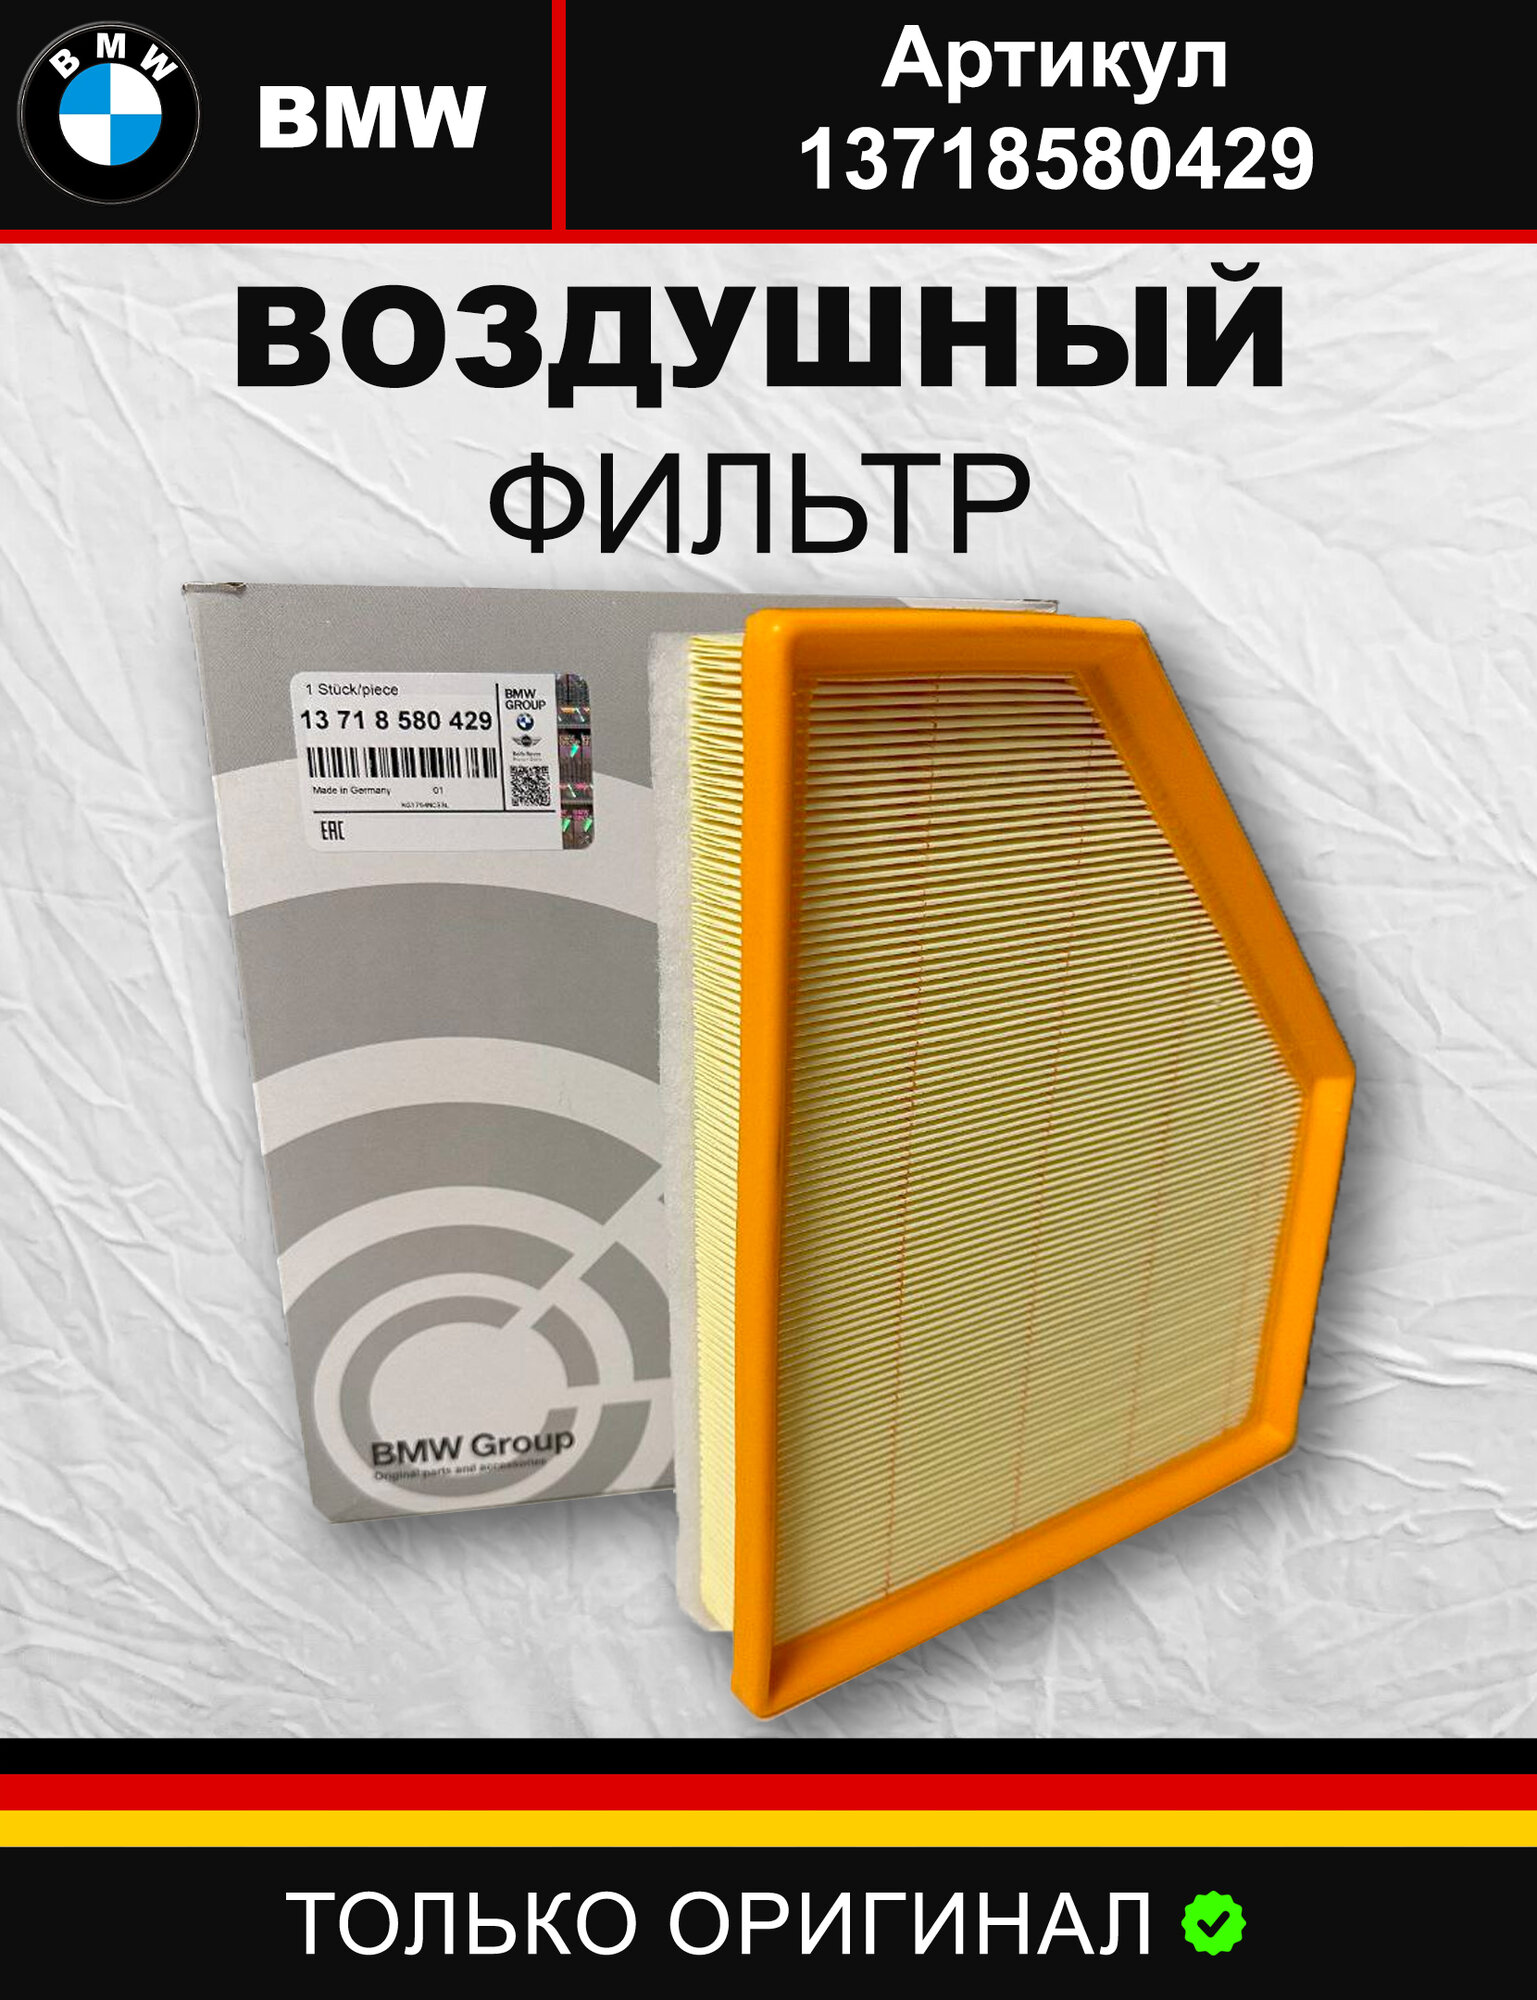 Воздушный фильтр для BMW 13718580429